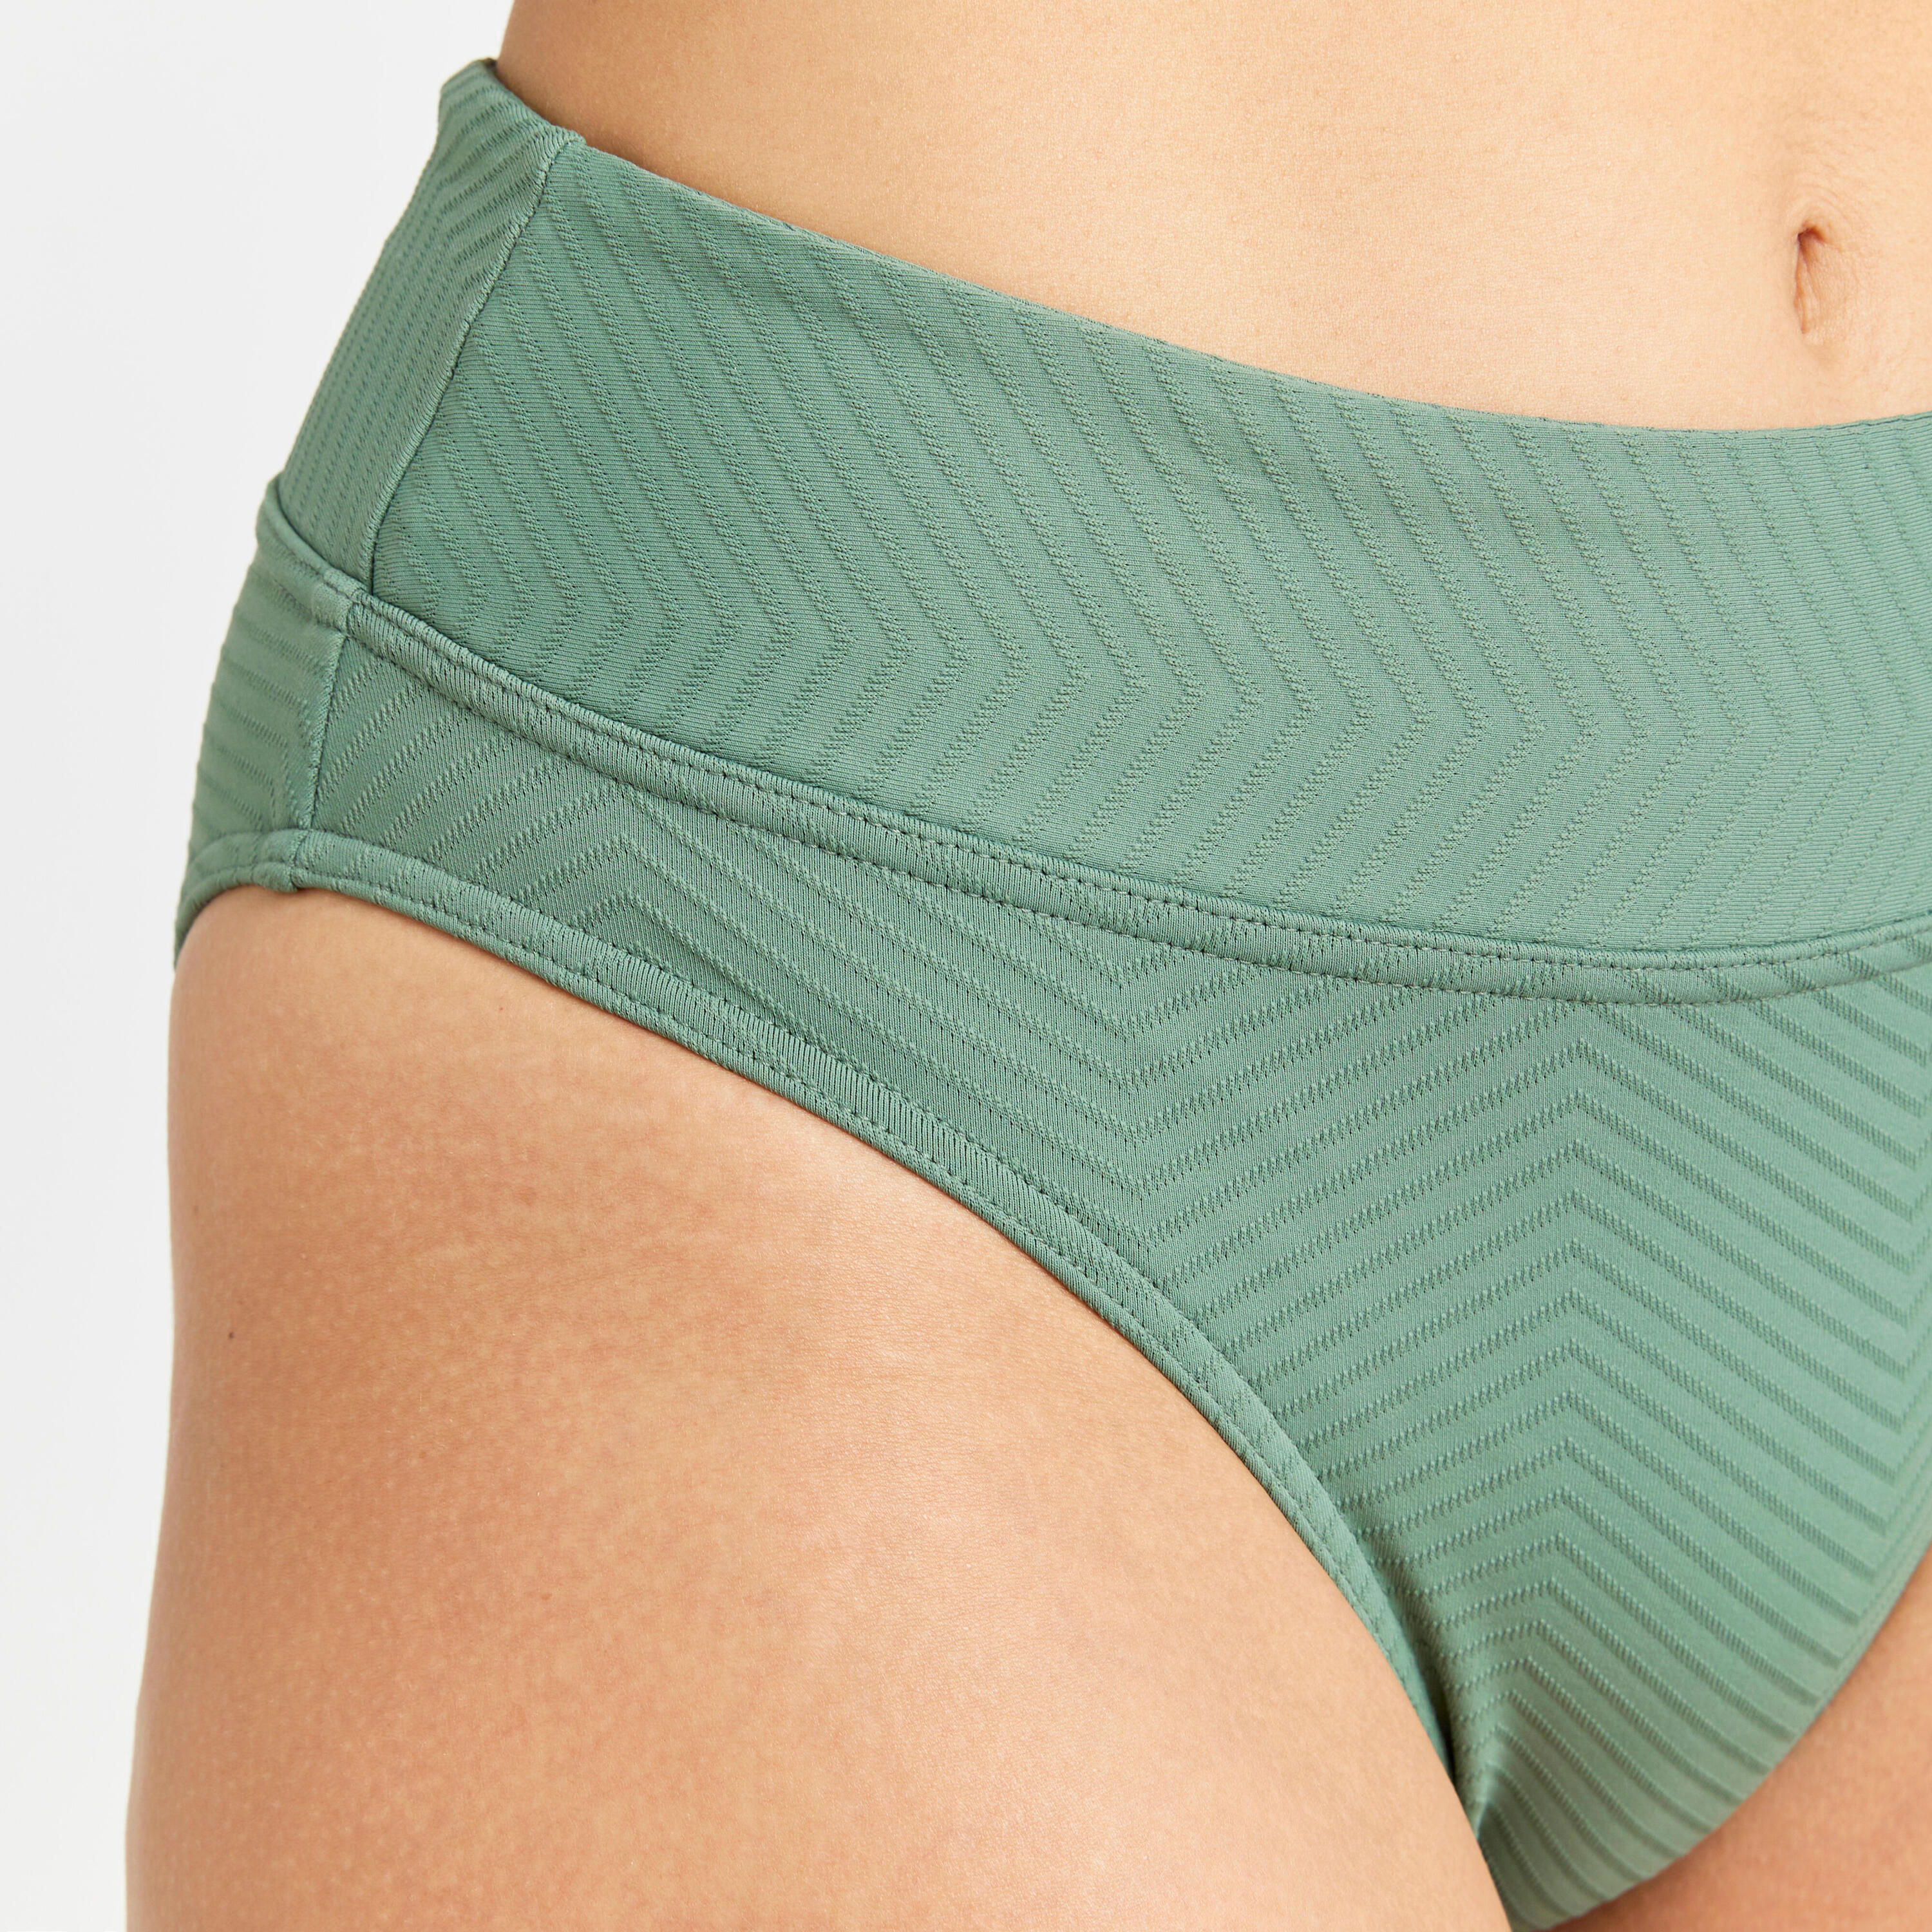 Women's high-waisted textured briefs swimsuit bottoms - Nora khaki 4/4